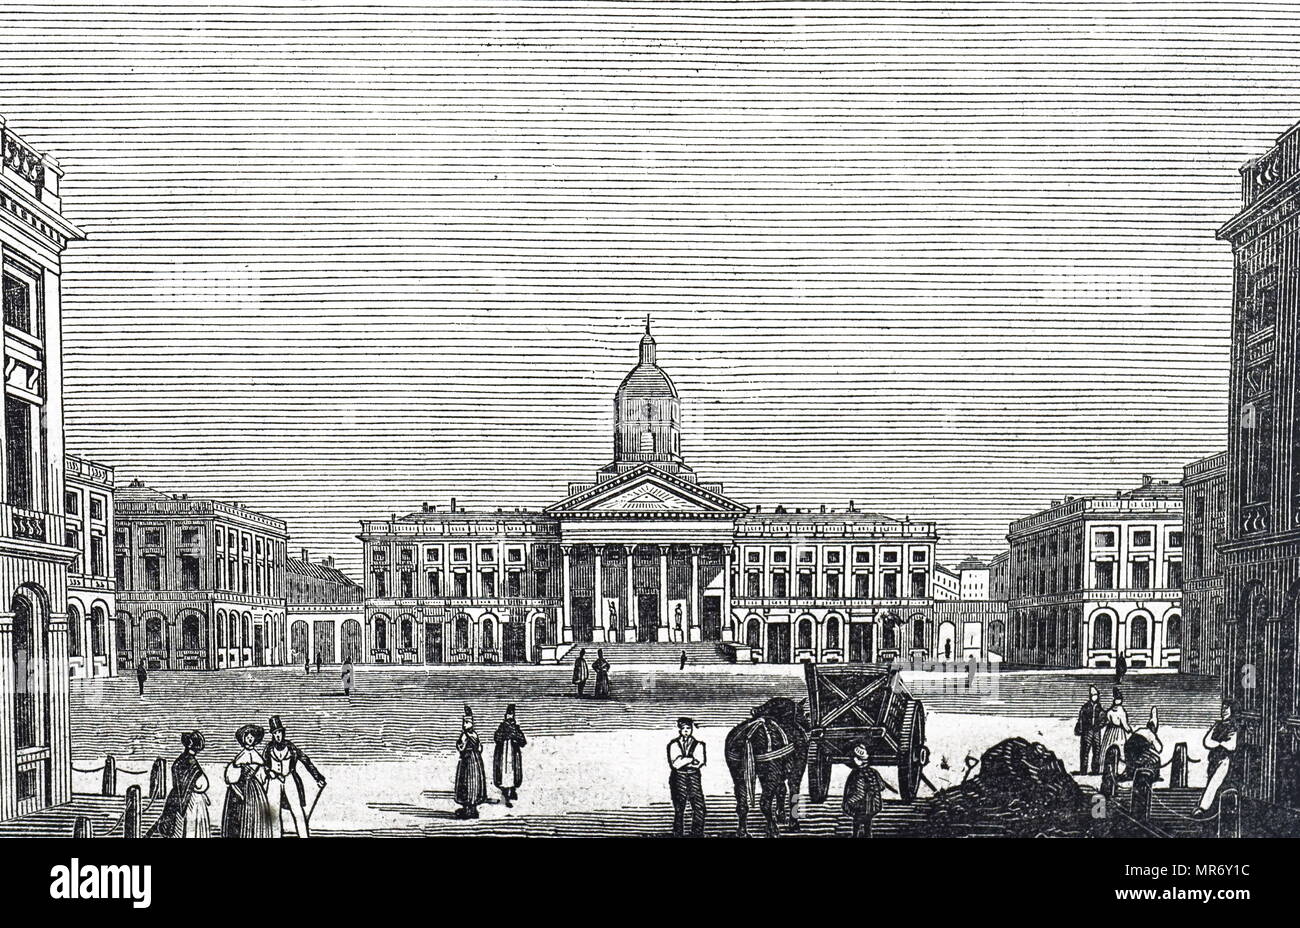 Gravure illustrant le Palais Royal de Bruxelles, le palais du Roi et Reine des Belges dans le centre de la capitale du pays, Bruxelles. En date du 19e siècle Banque D'Images